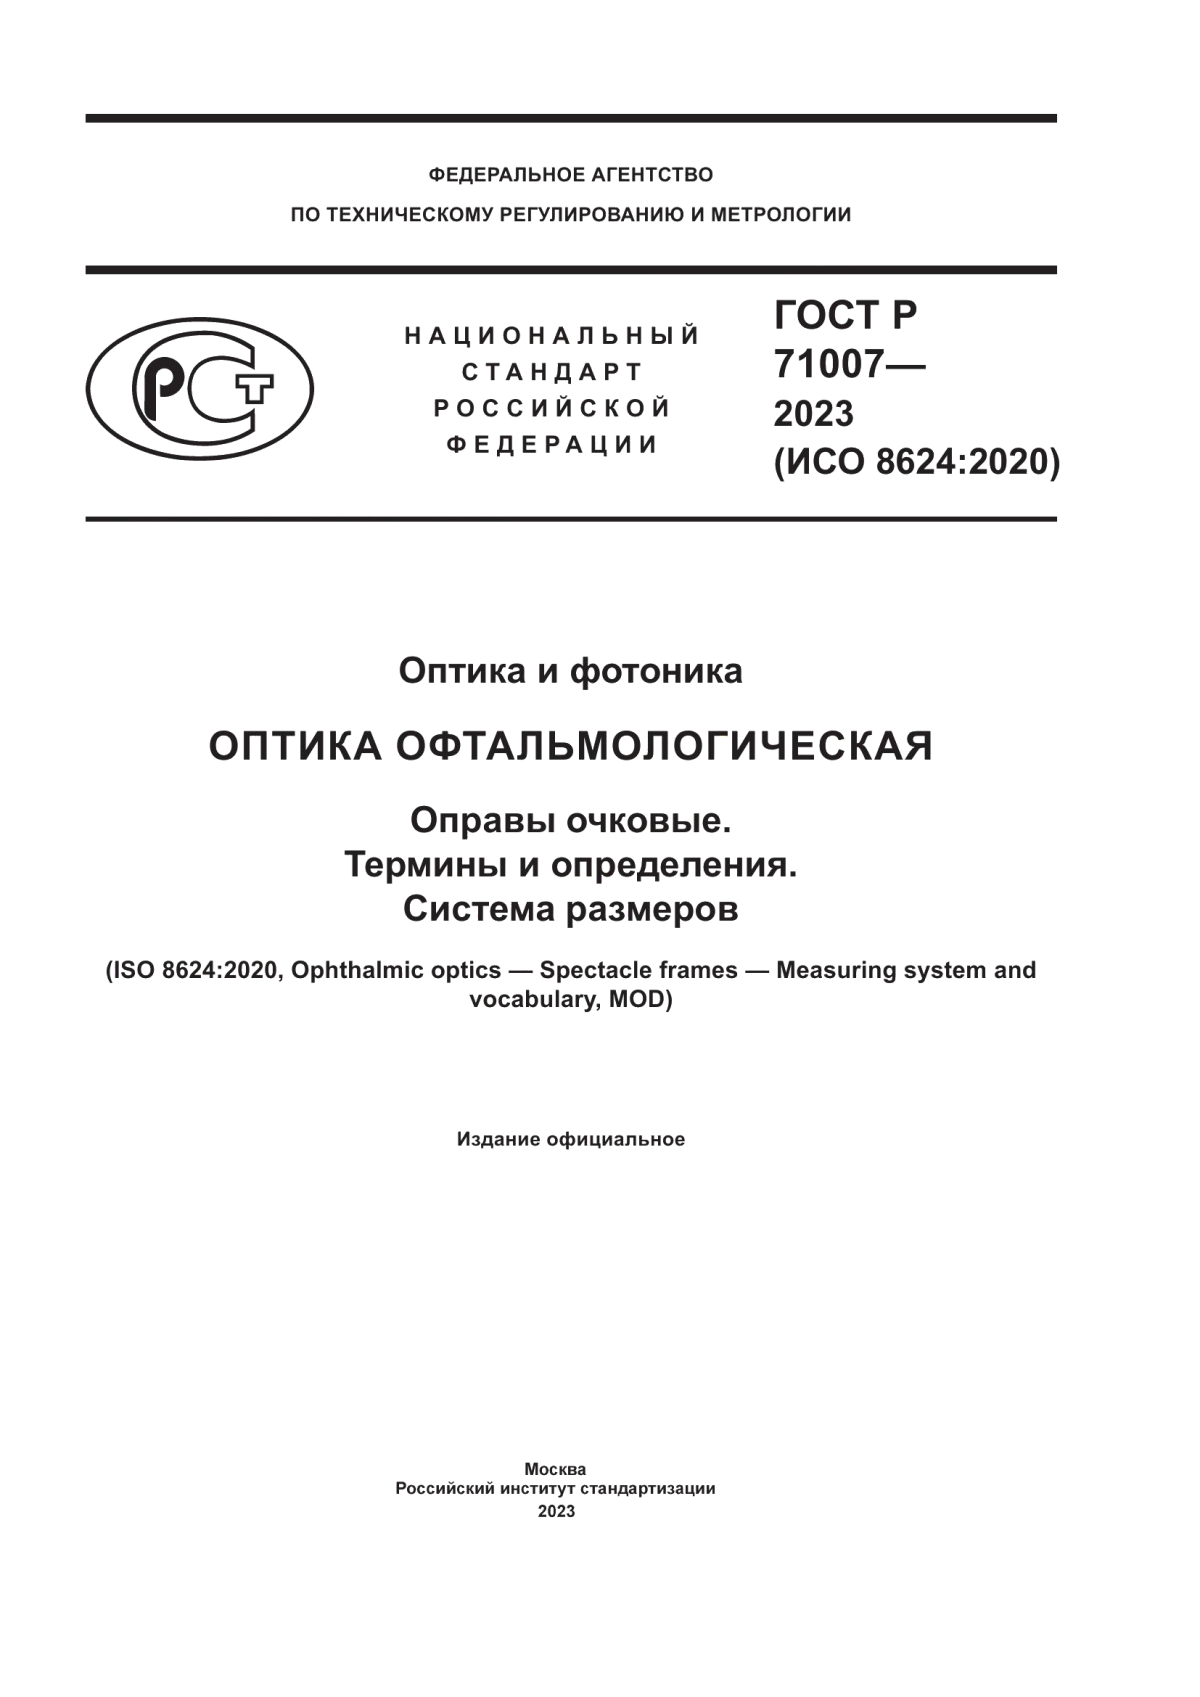 ГОСТ Р 71007-2023 Оптика и фотоника. Оптика офтальмологическая. Оправы очковые. Термины и определения. Система размеров